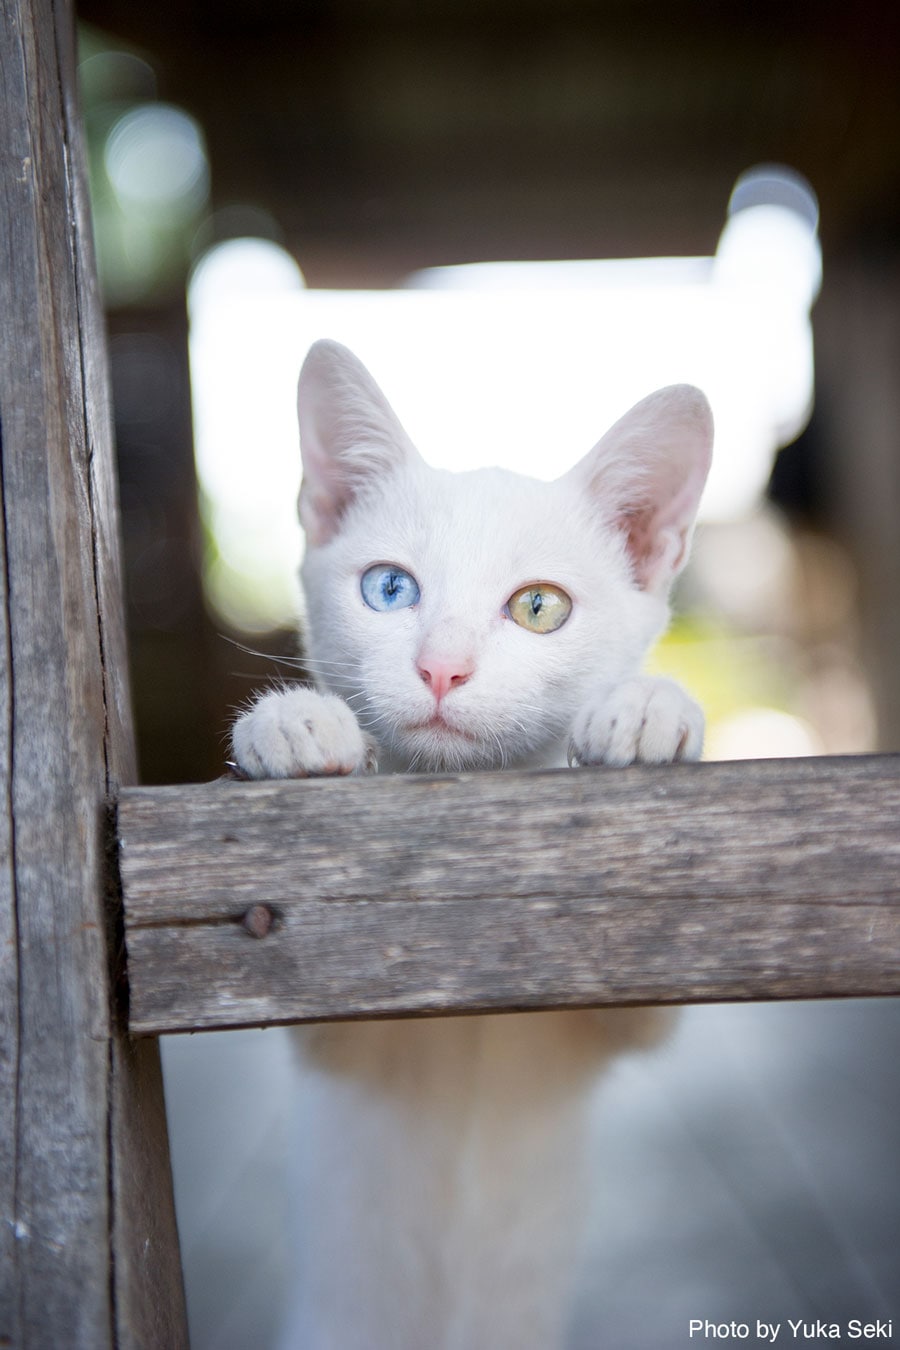 オッドアイの白猫ちゃん。2009年12月、ラオスで撮影。